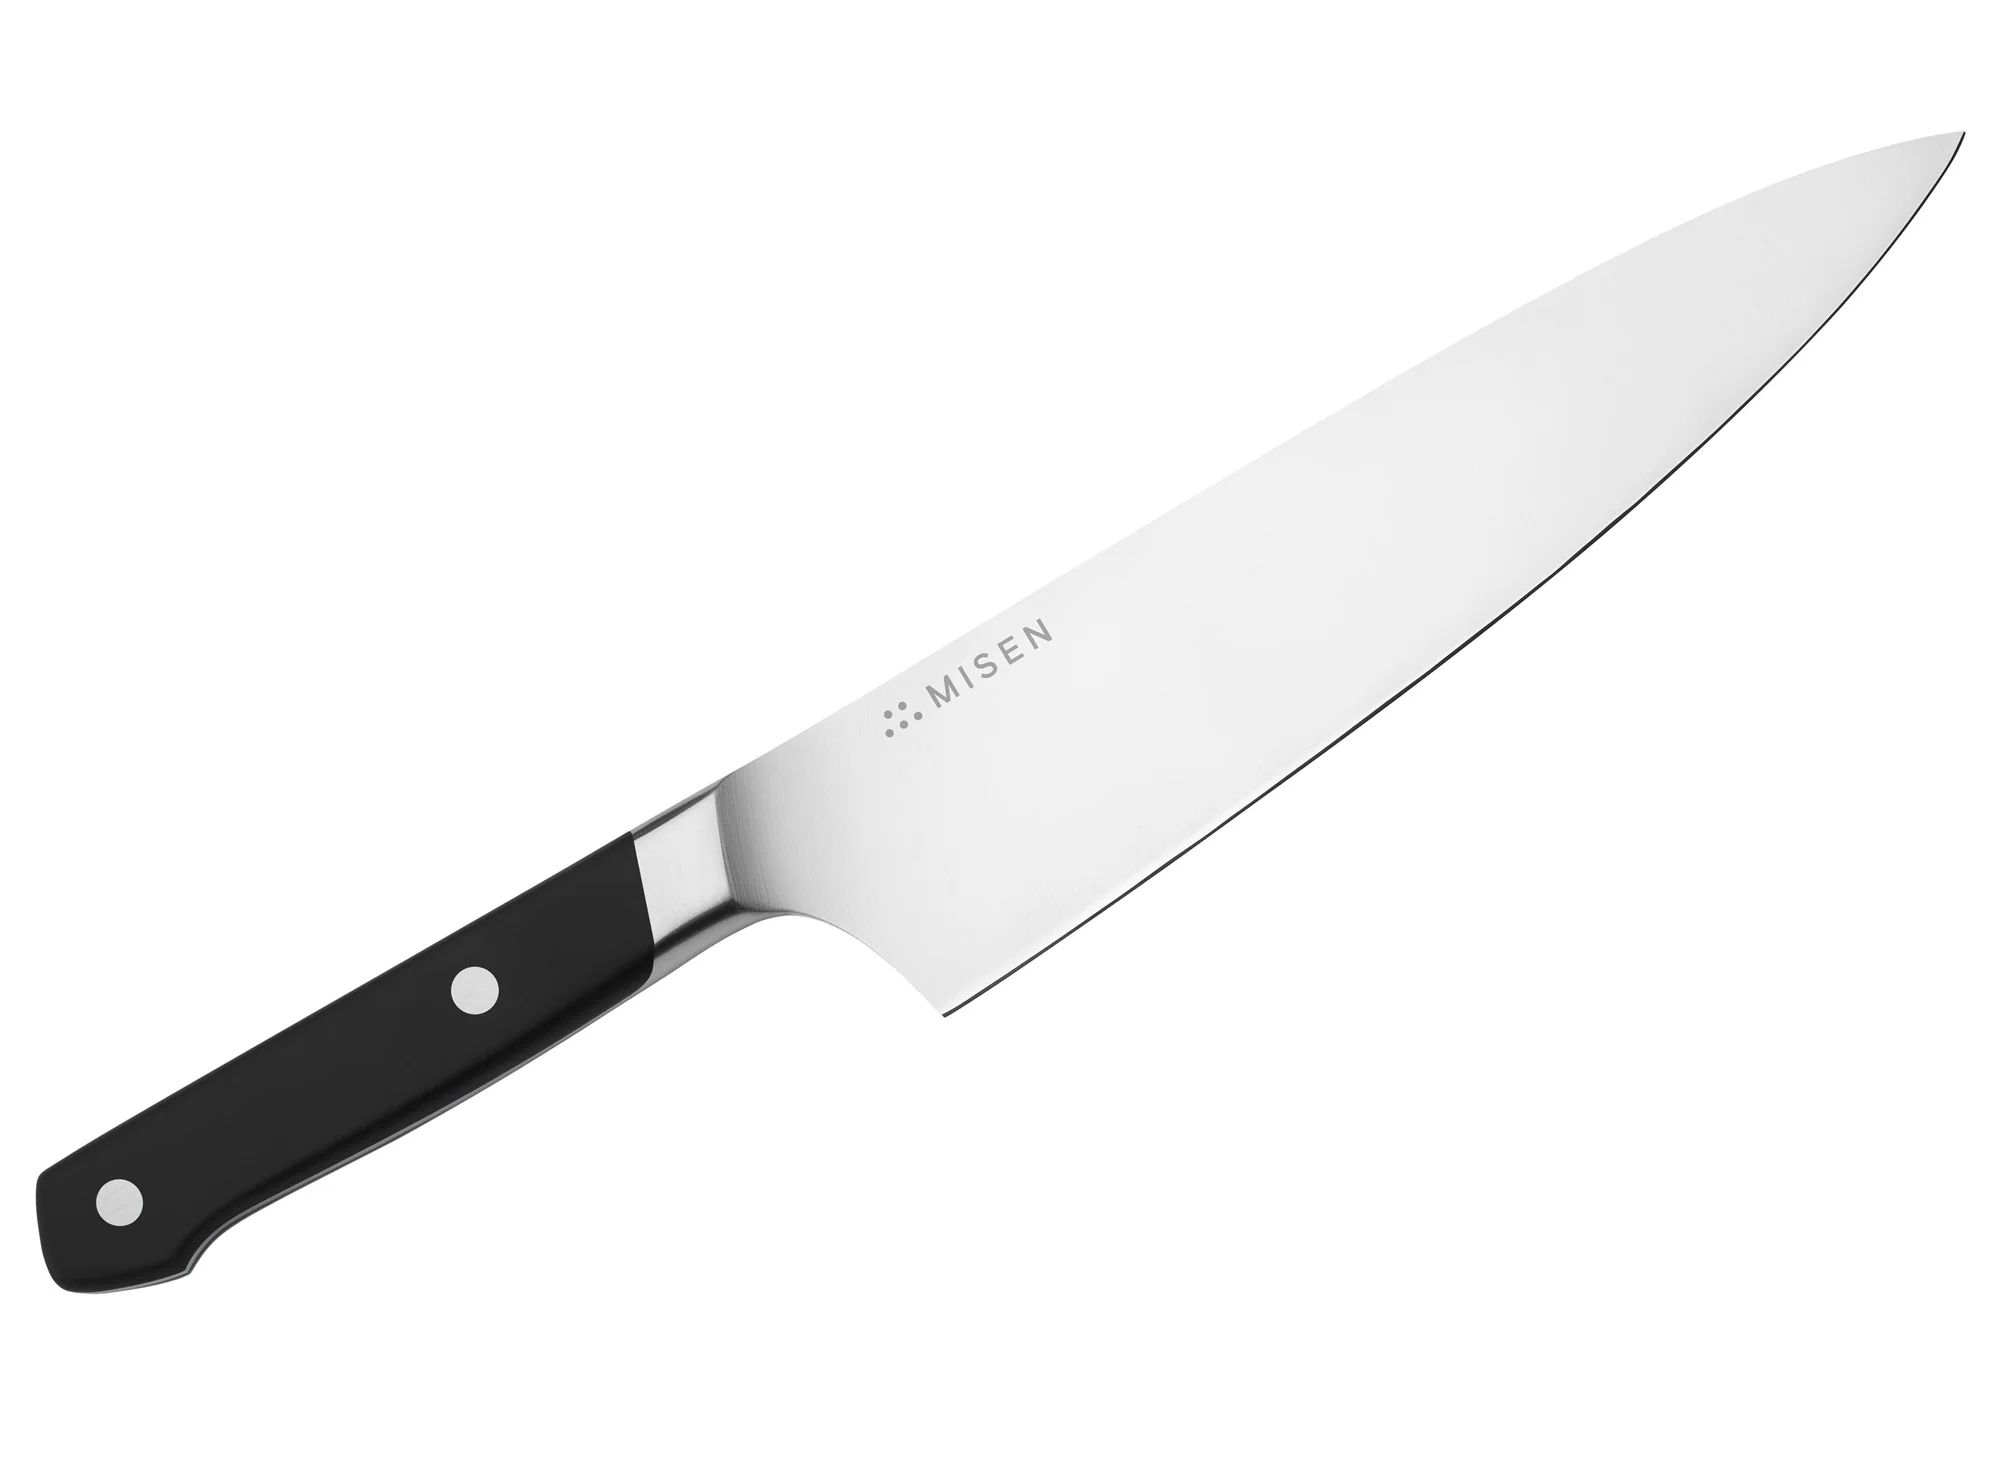 Misen Chef’s Knife - 8 Inch | Misen